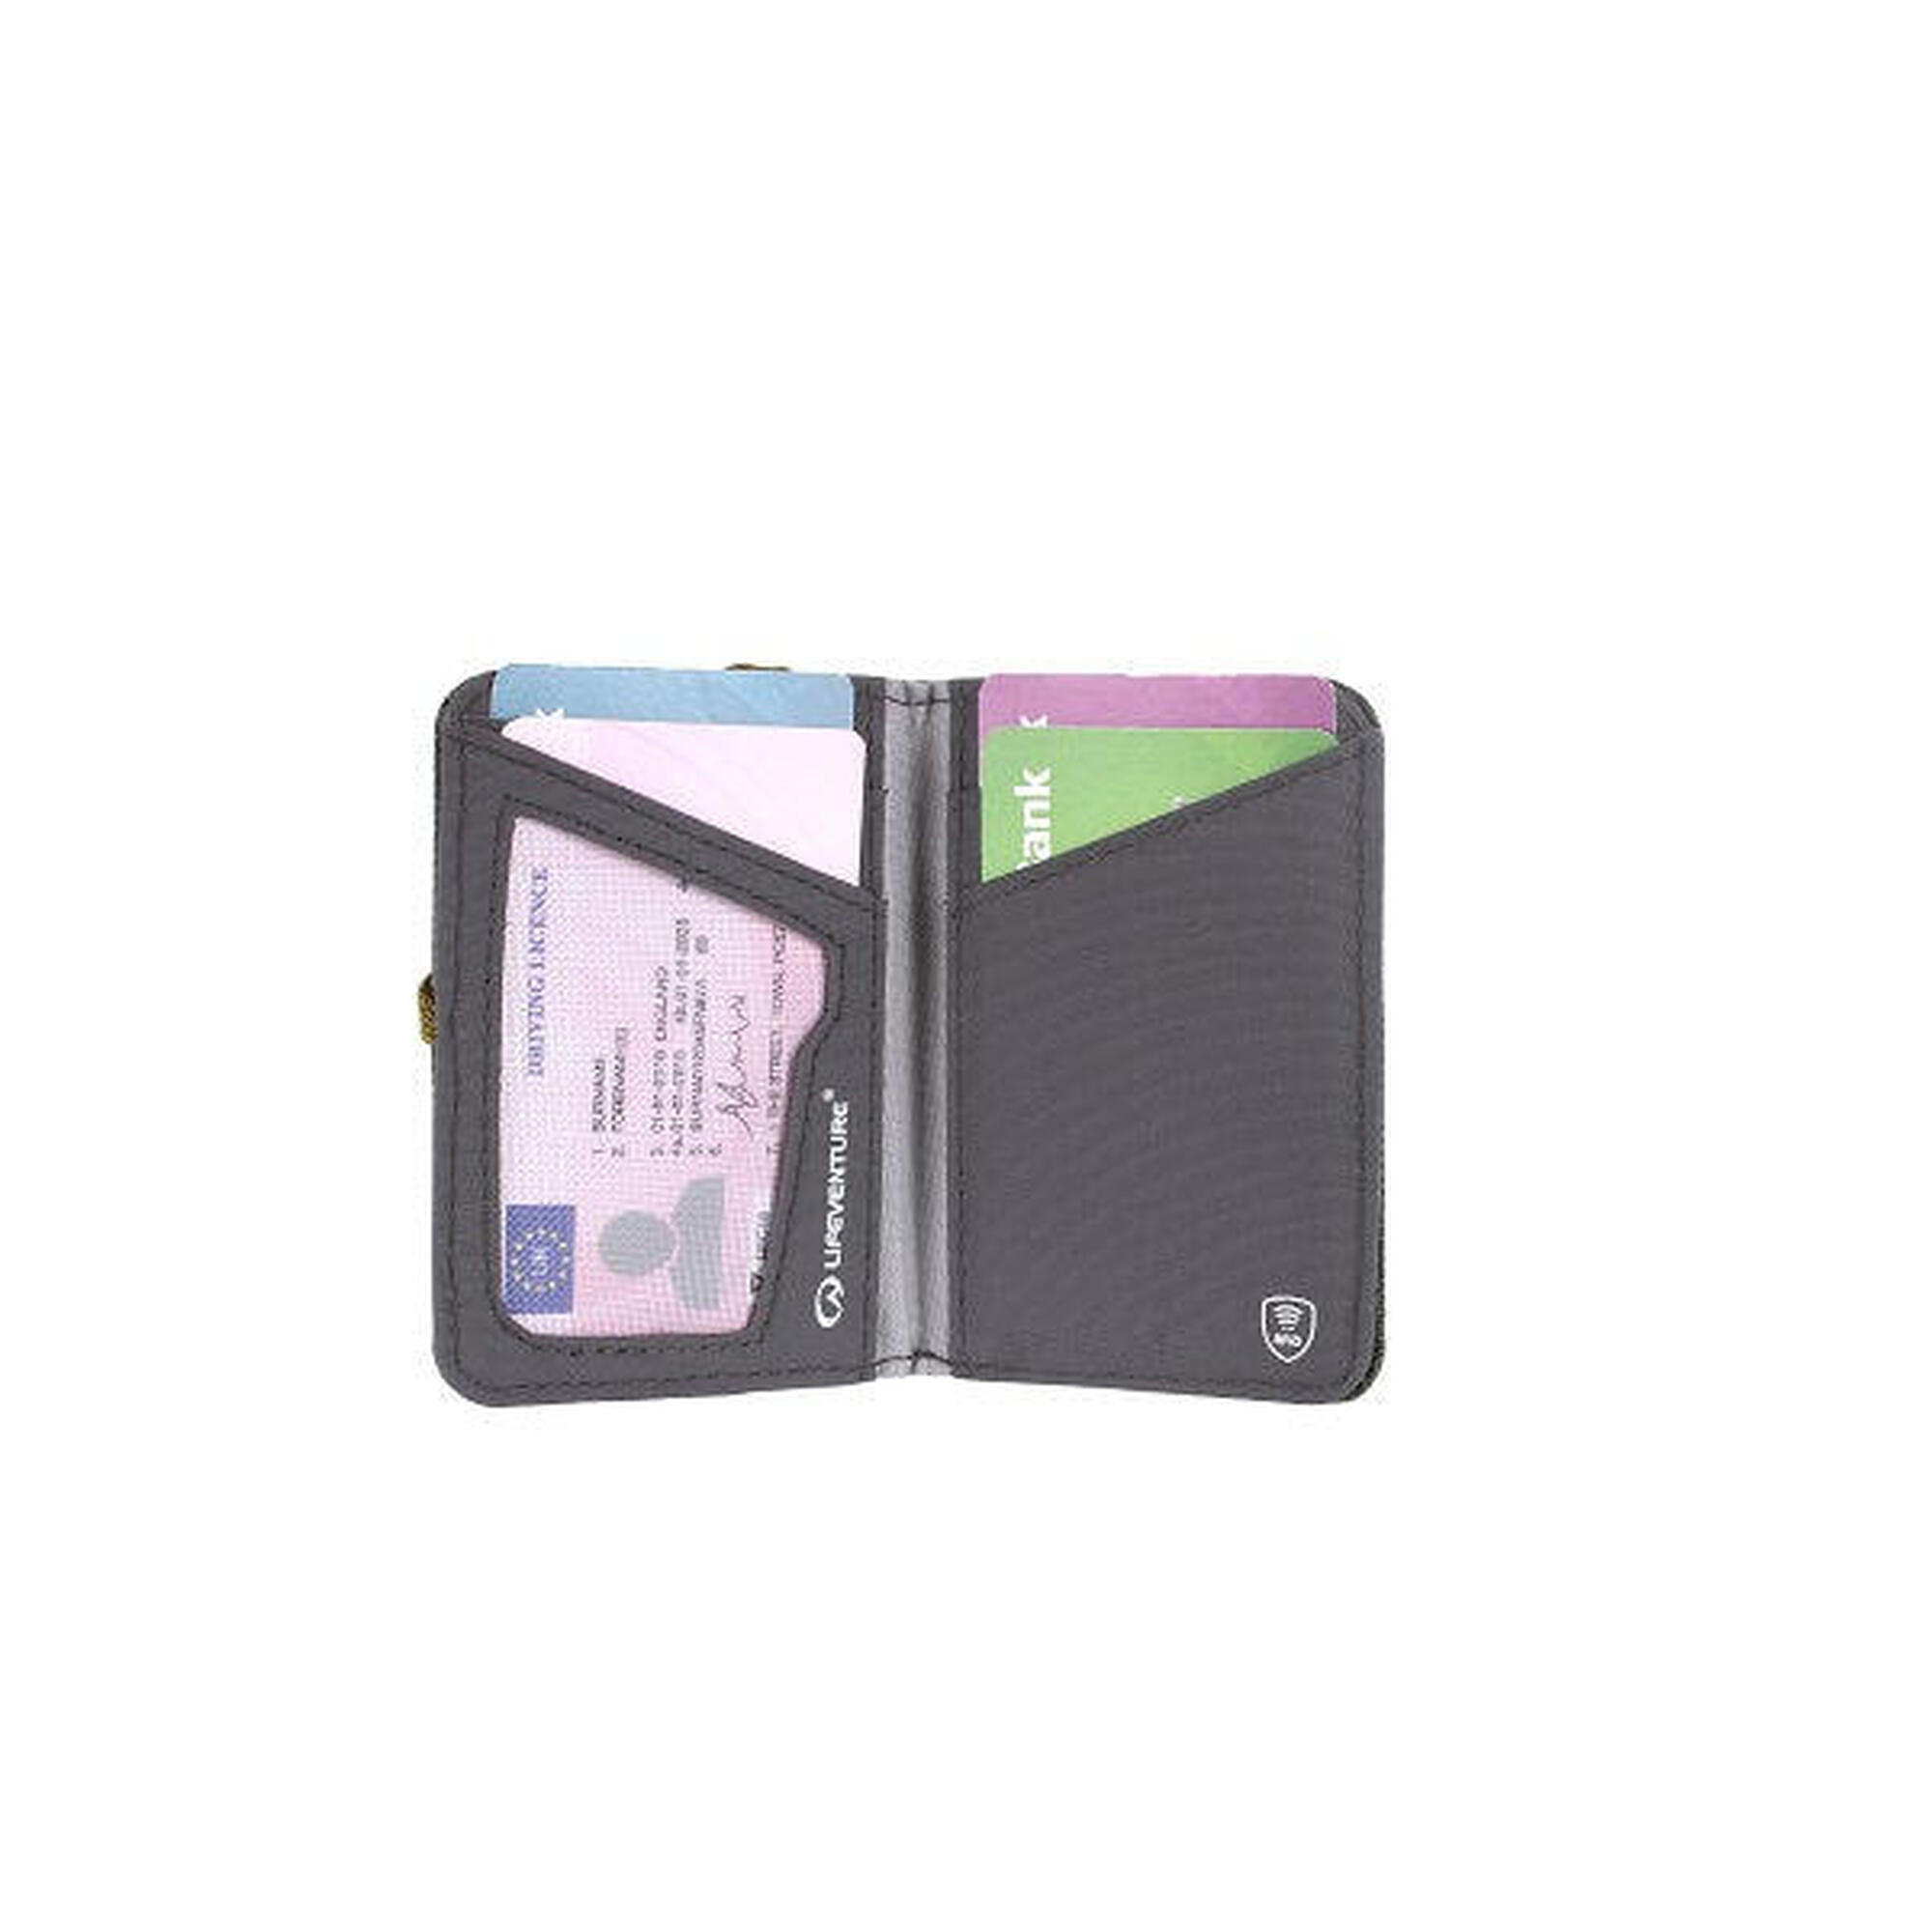 環保防盜RFID卡錢包 - 綠色